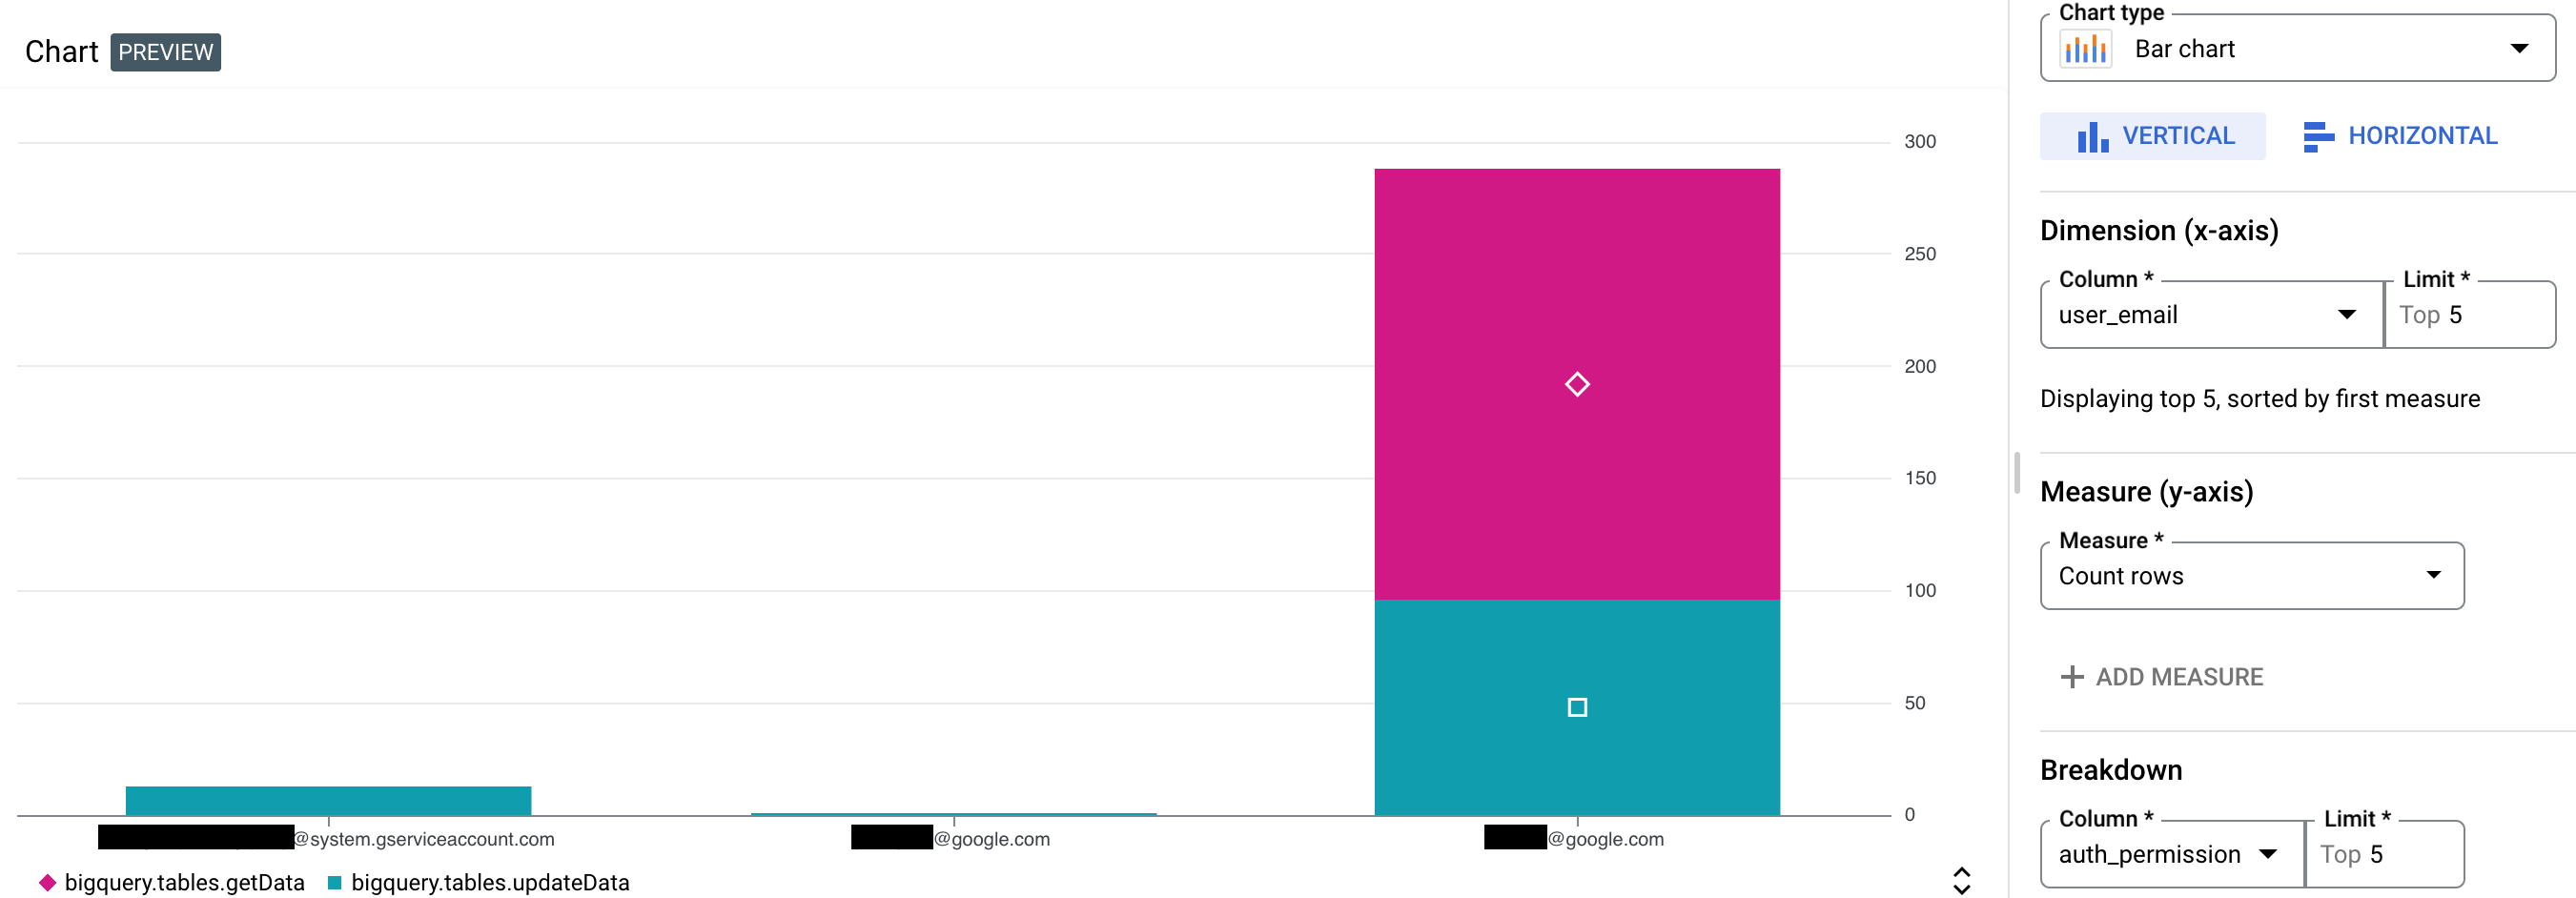 Exemplo de gráfico para registros de auditoria de acesso a dados do BigQuery